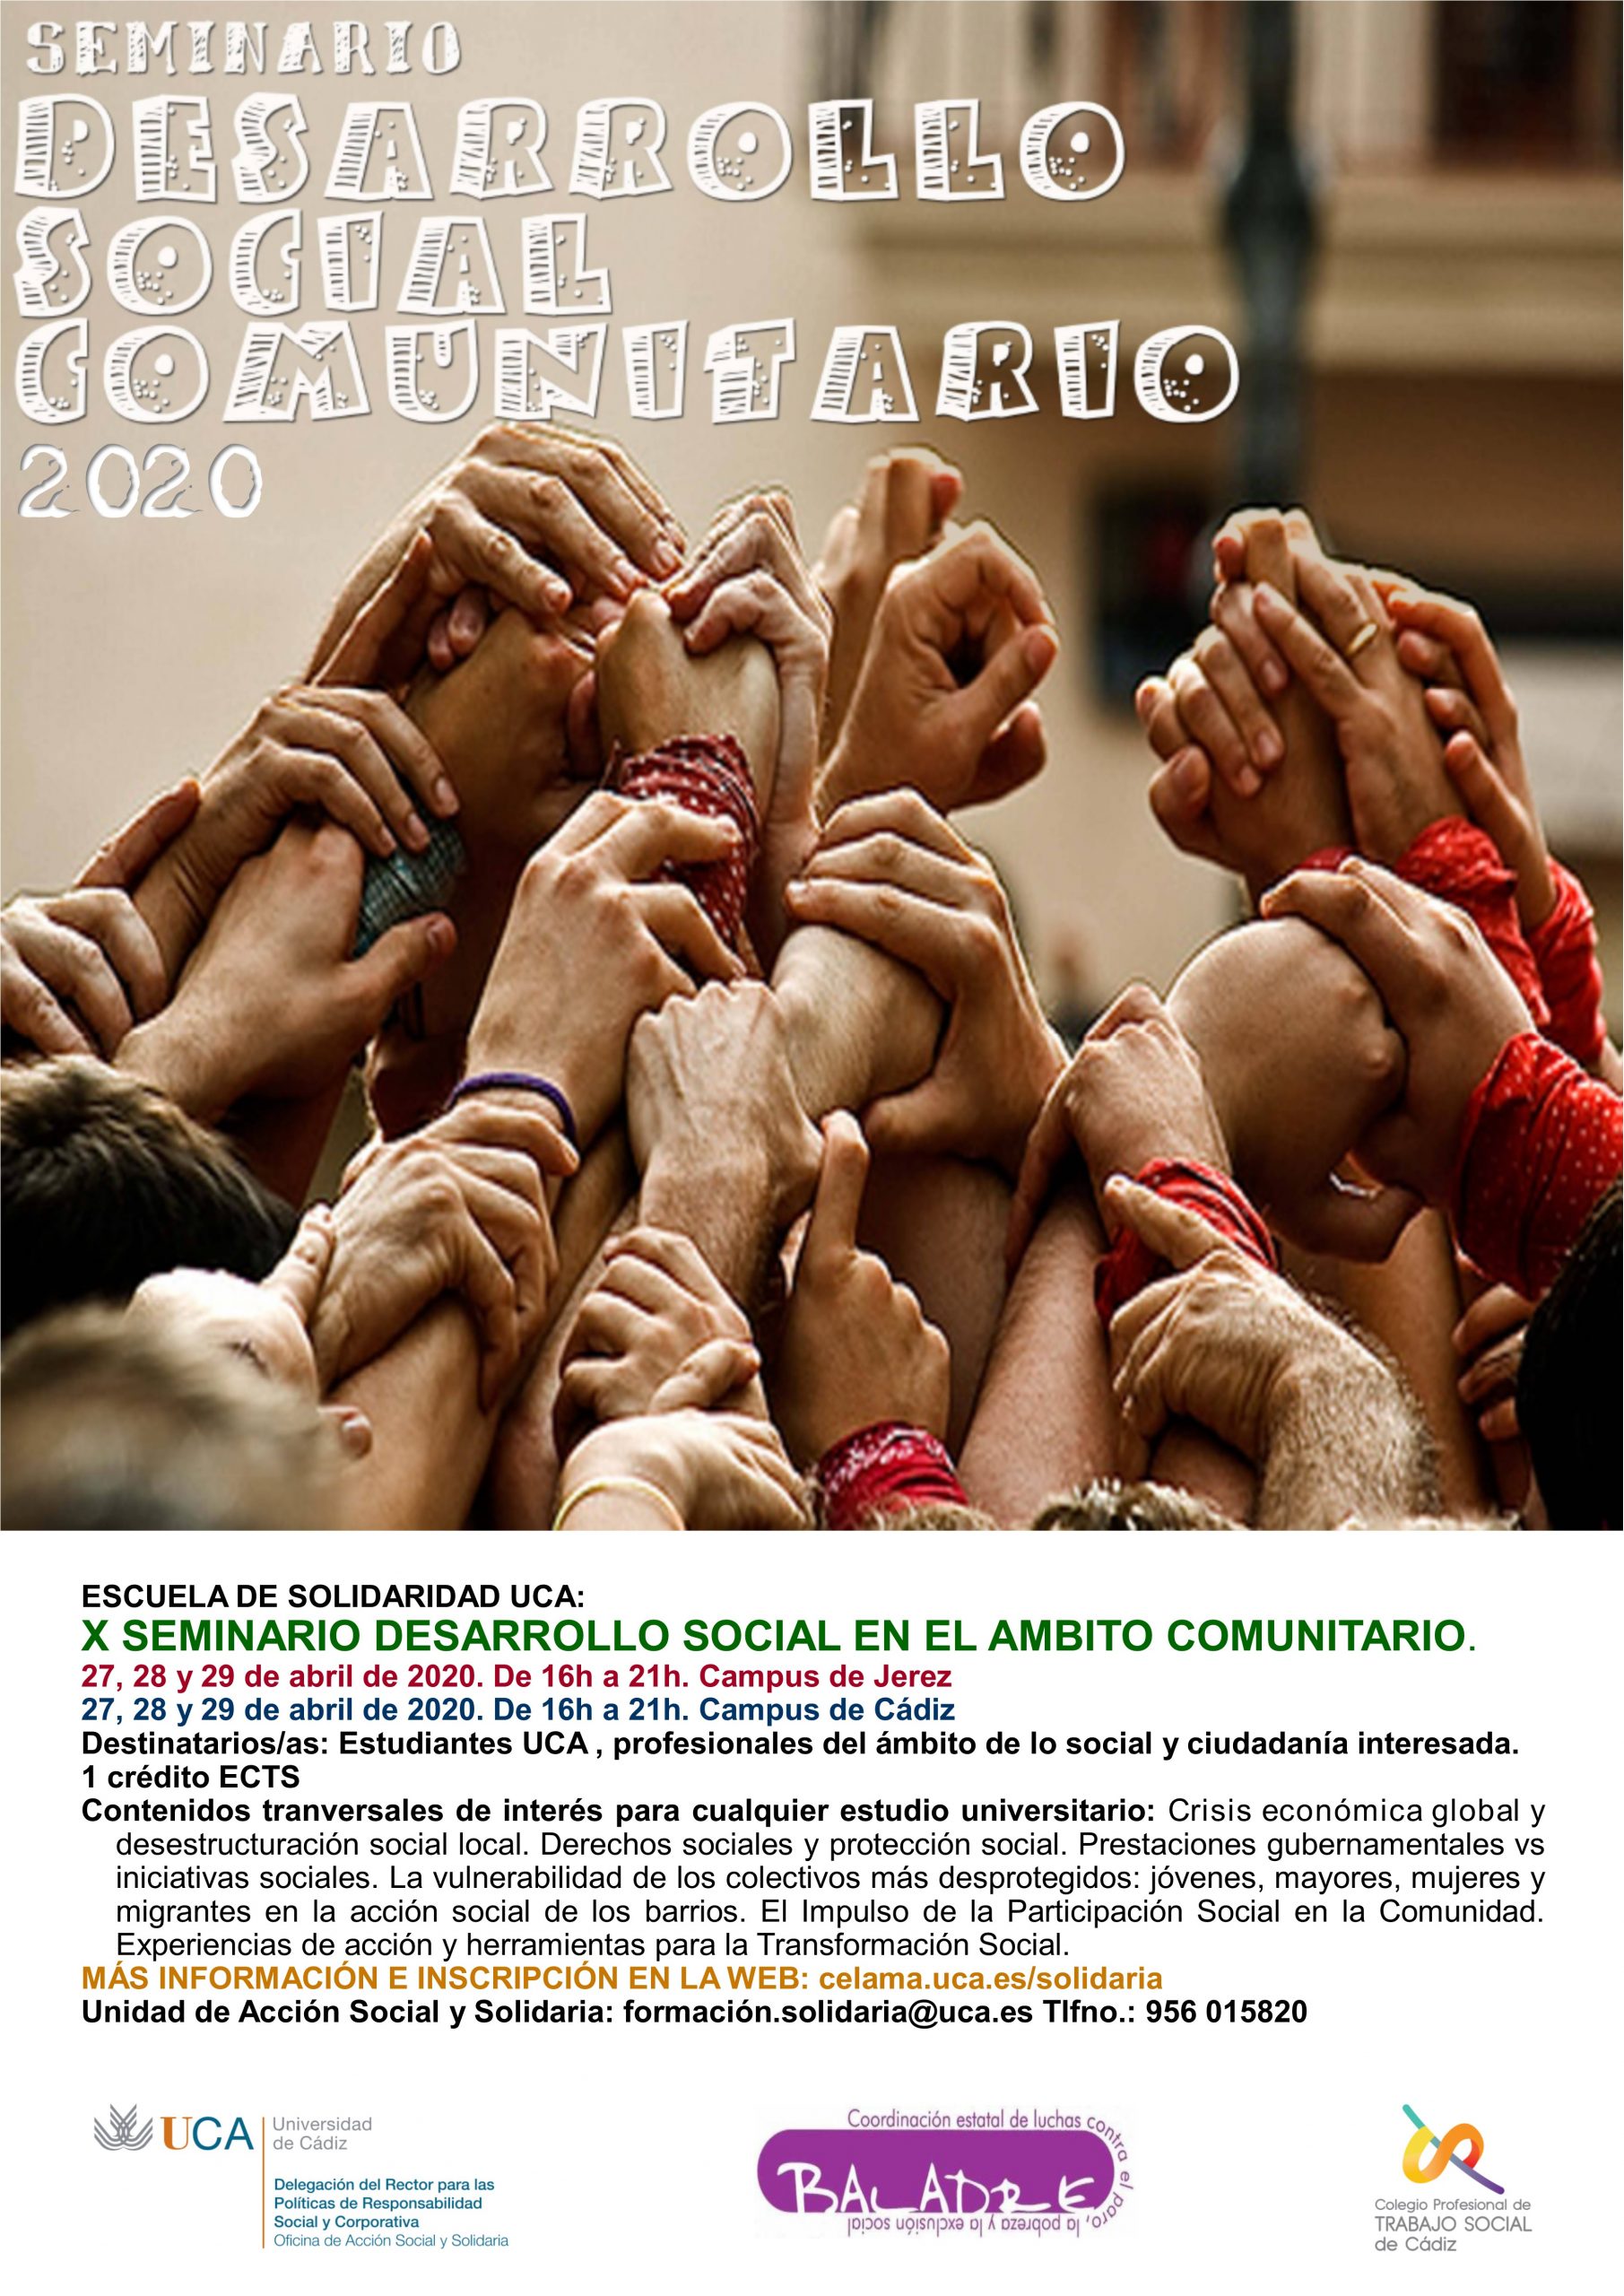 Campus Cádiz y Jerez. X Seminario “Desarrollo Social en el Ámbito Comunitario”. Escuela de Solidaridad UCA.